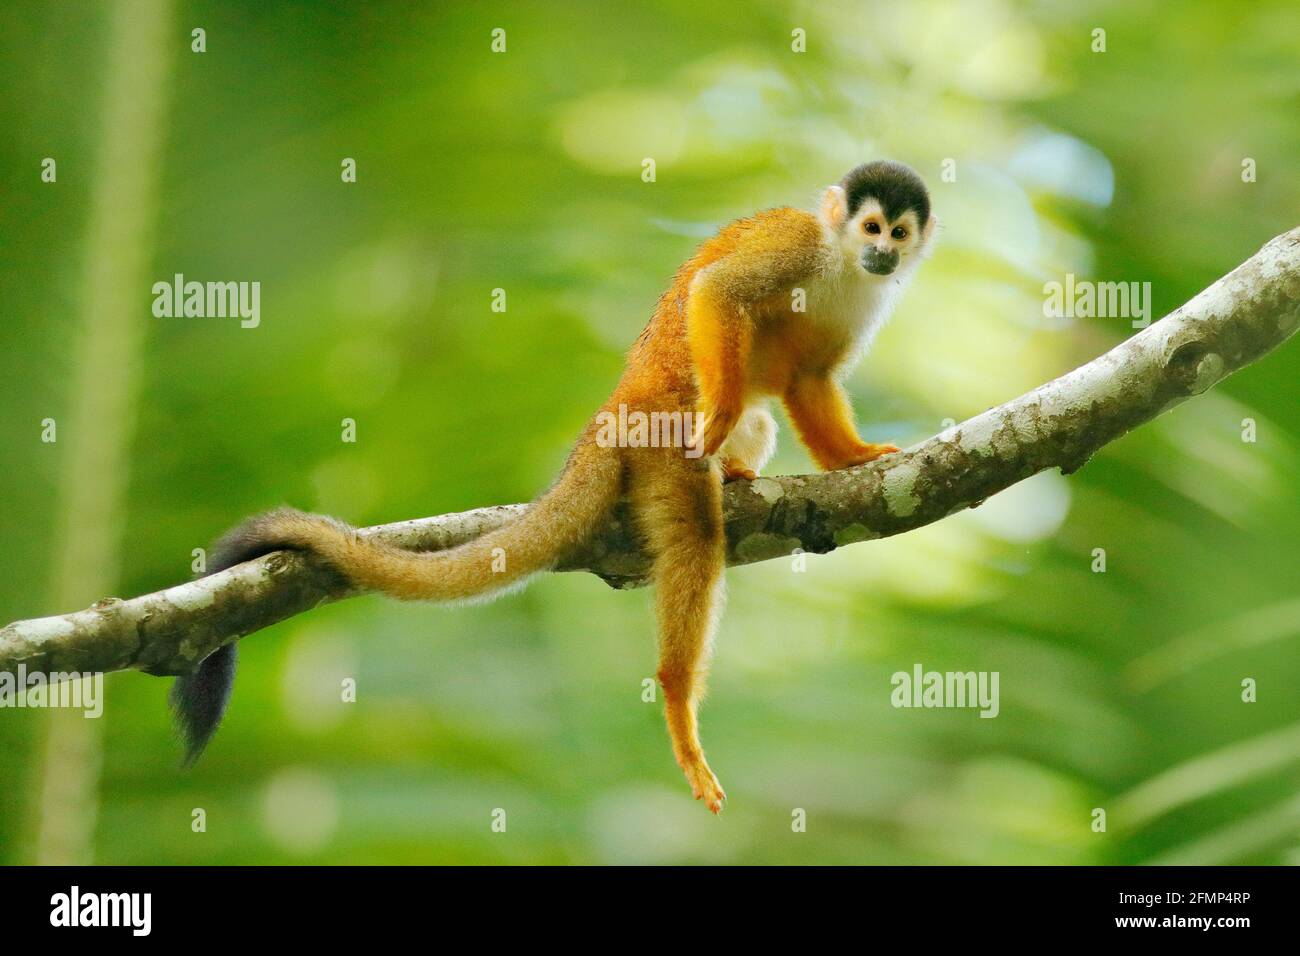 Affe, langer Schwanz im Tropenwald. Eichhörnchen-Affe, Saimiri oerstedii,  sitzt auf dem Baumstamm mit grünen Blättern, Corcovado NP, Costa Rica. Affe  Stockfotografie - Alamy